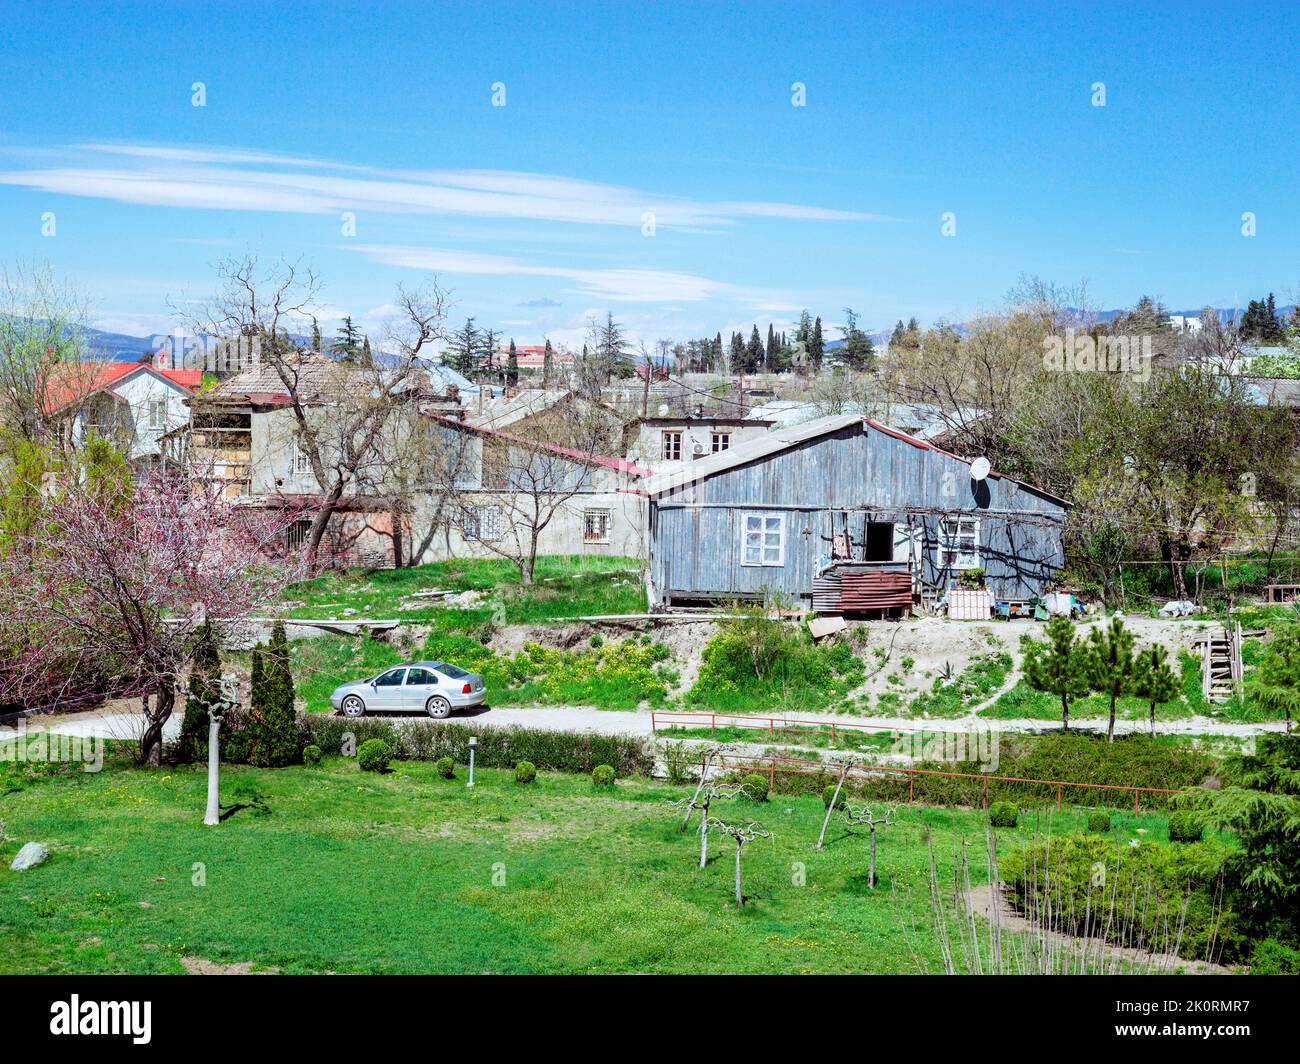 Tbilisi outskirts, Georgia Stock Photo